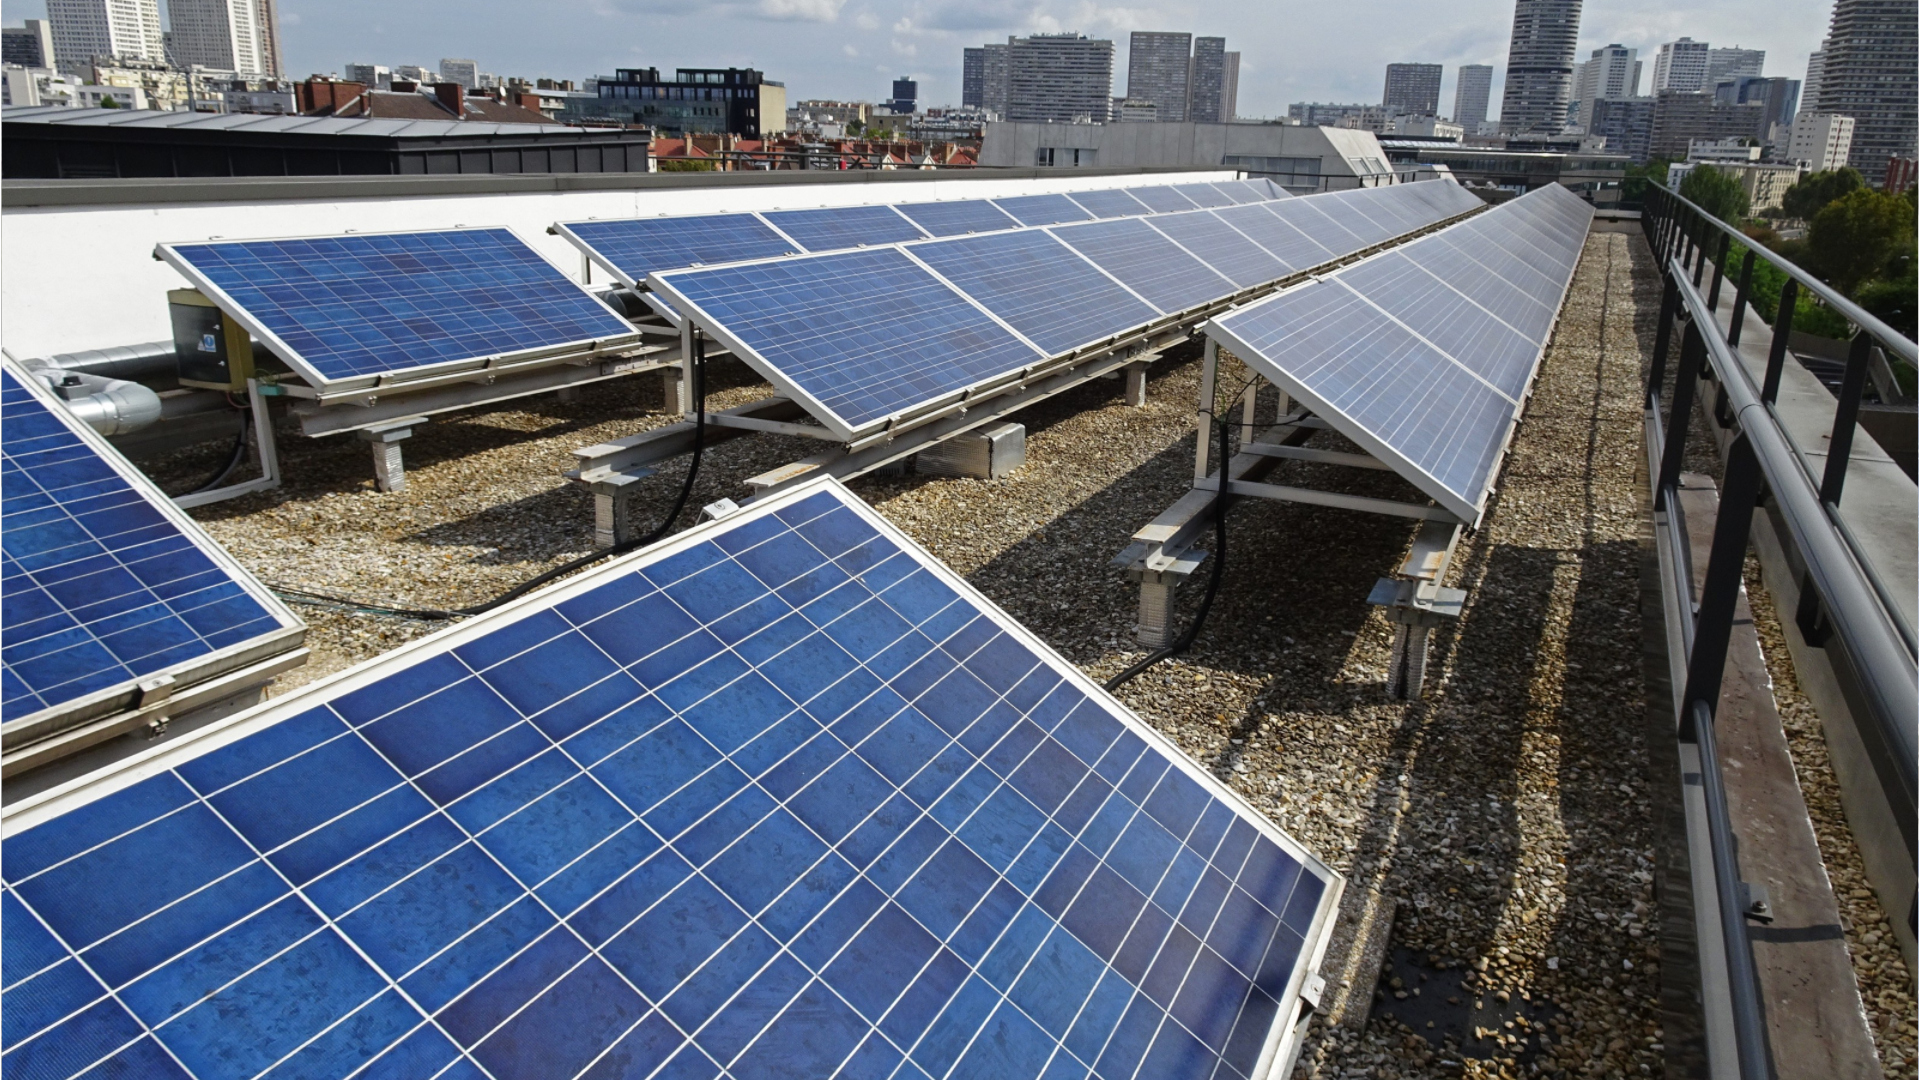 01/02/2022 : Hausse des prix de l'électricité : le solaire photovoltaïque  un investissement rentable mais attention aux arnaques ! - Site énergie  du Service public de Wallonie